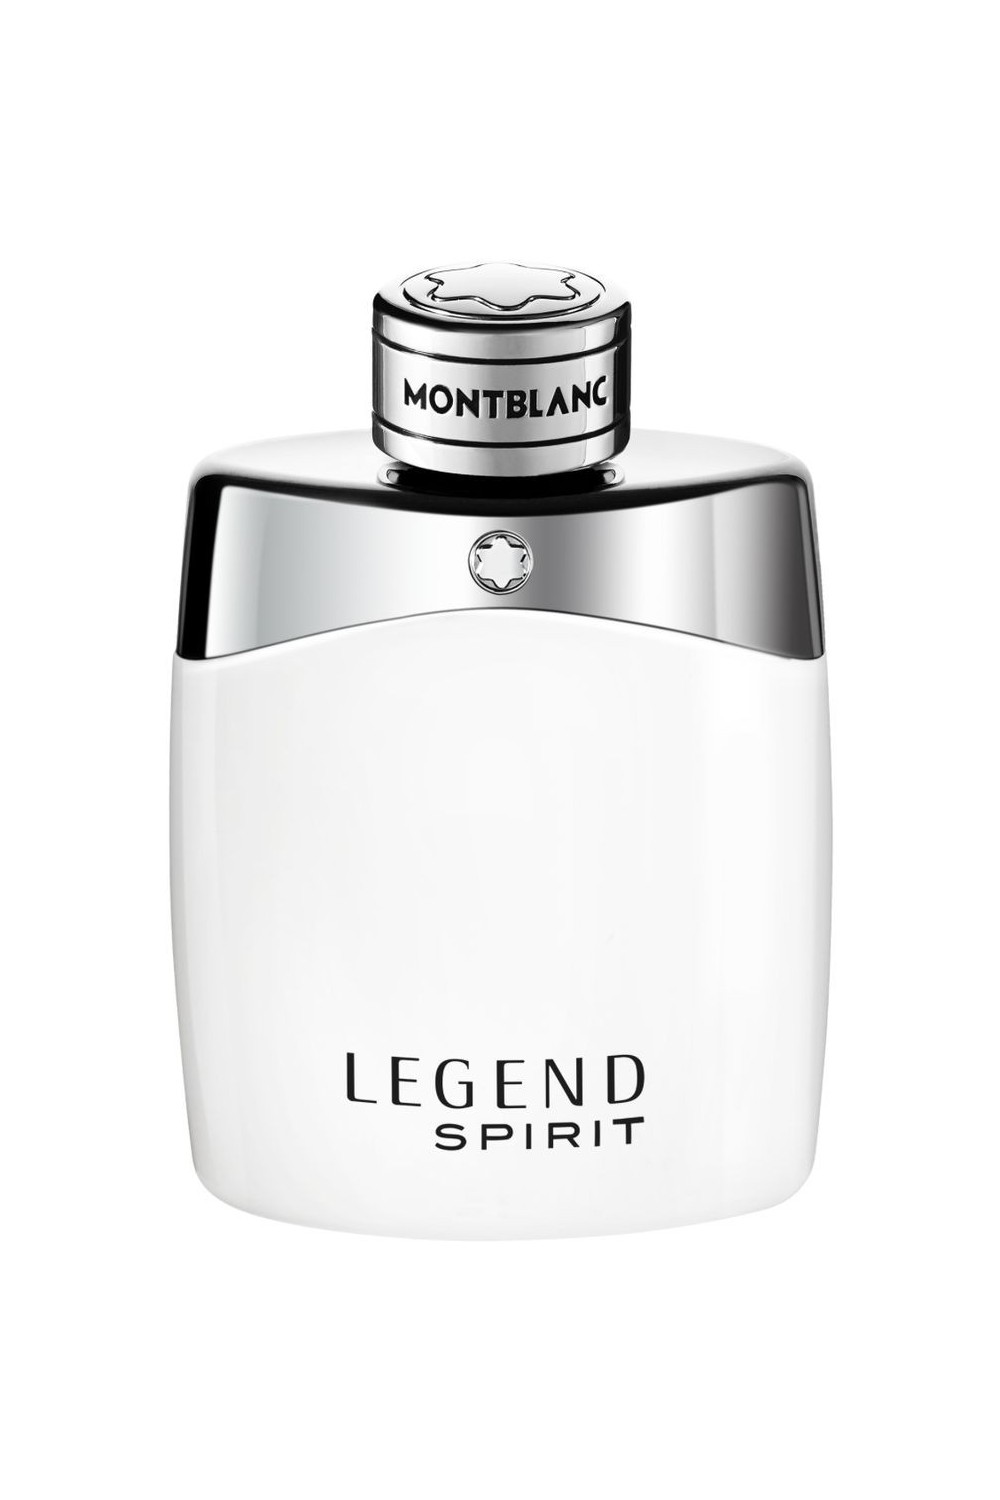 Montblanc Legend Spirit Eau De Toilette Spray 100ml